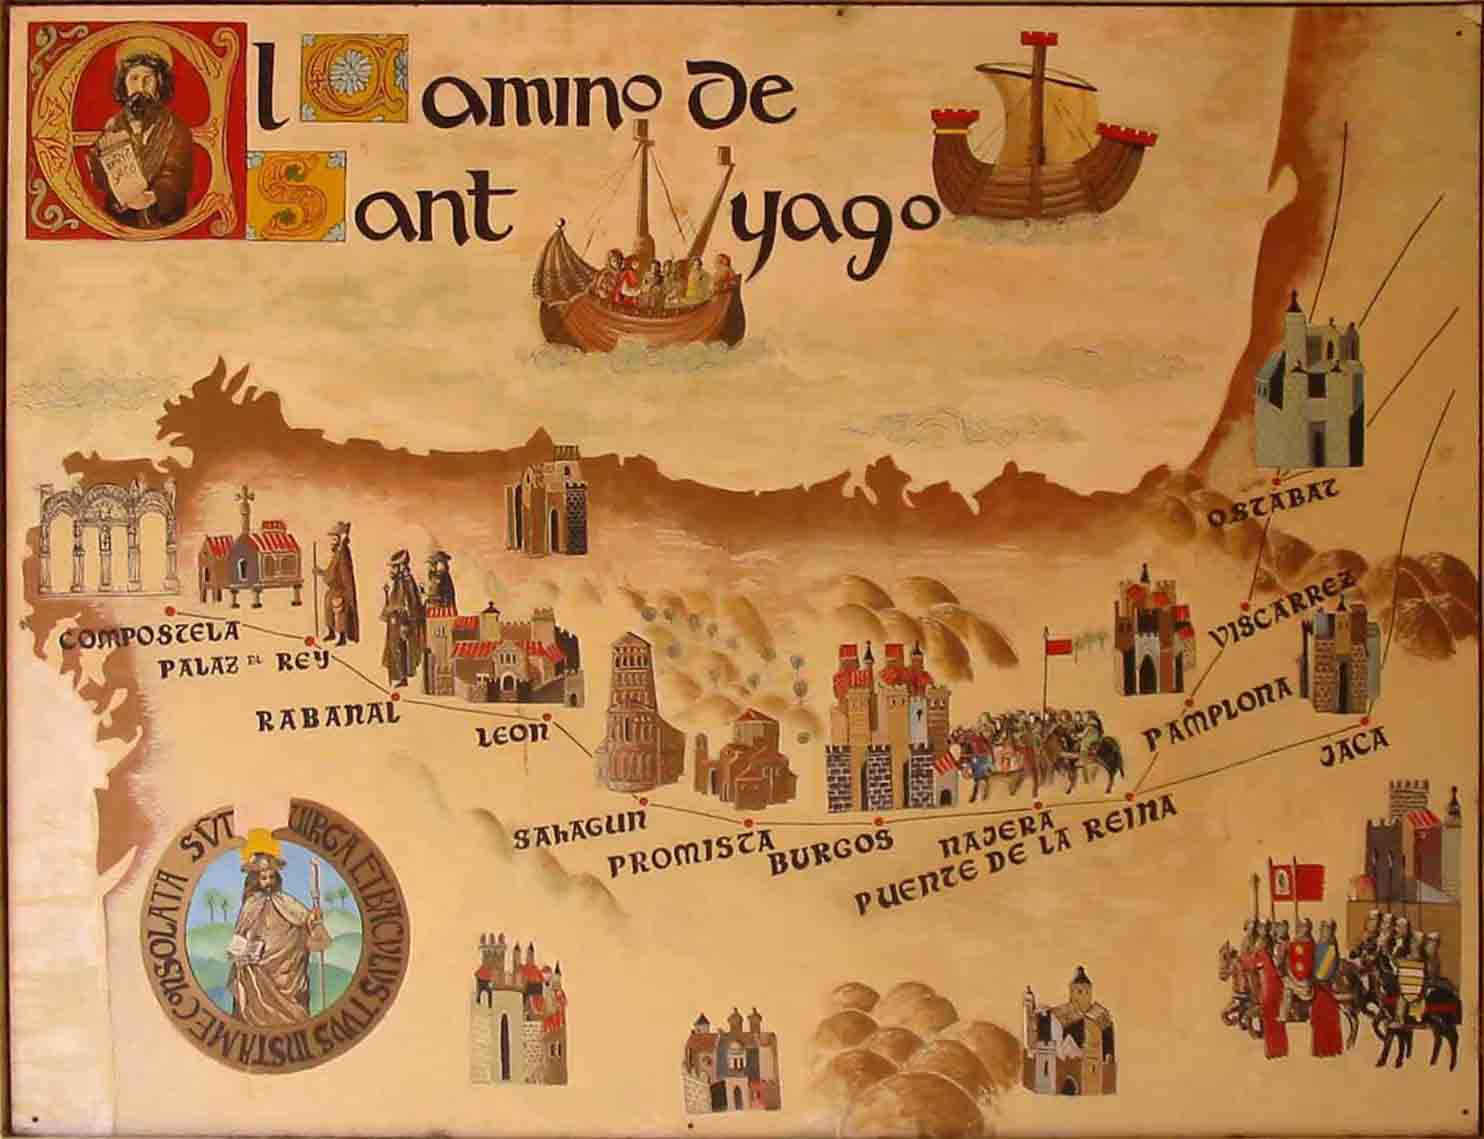 El Camino de Santiago y de donde provienen sus peregrinos